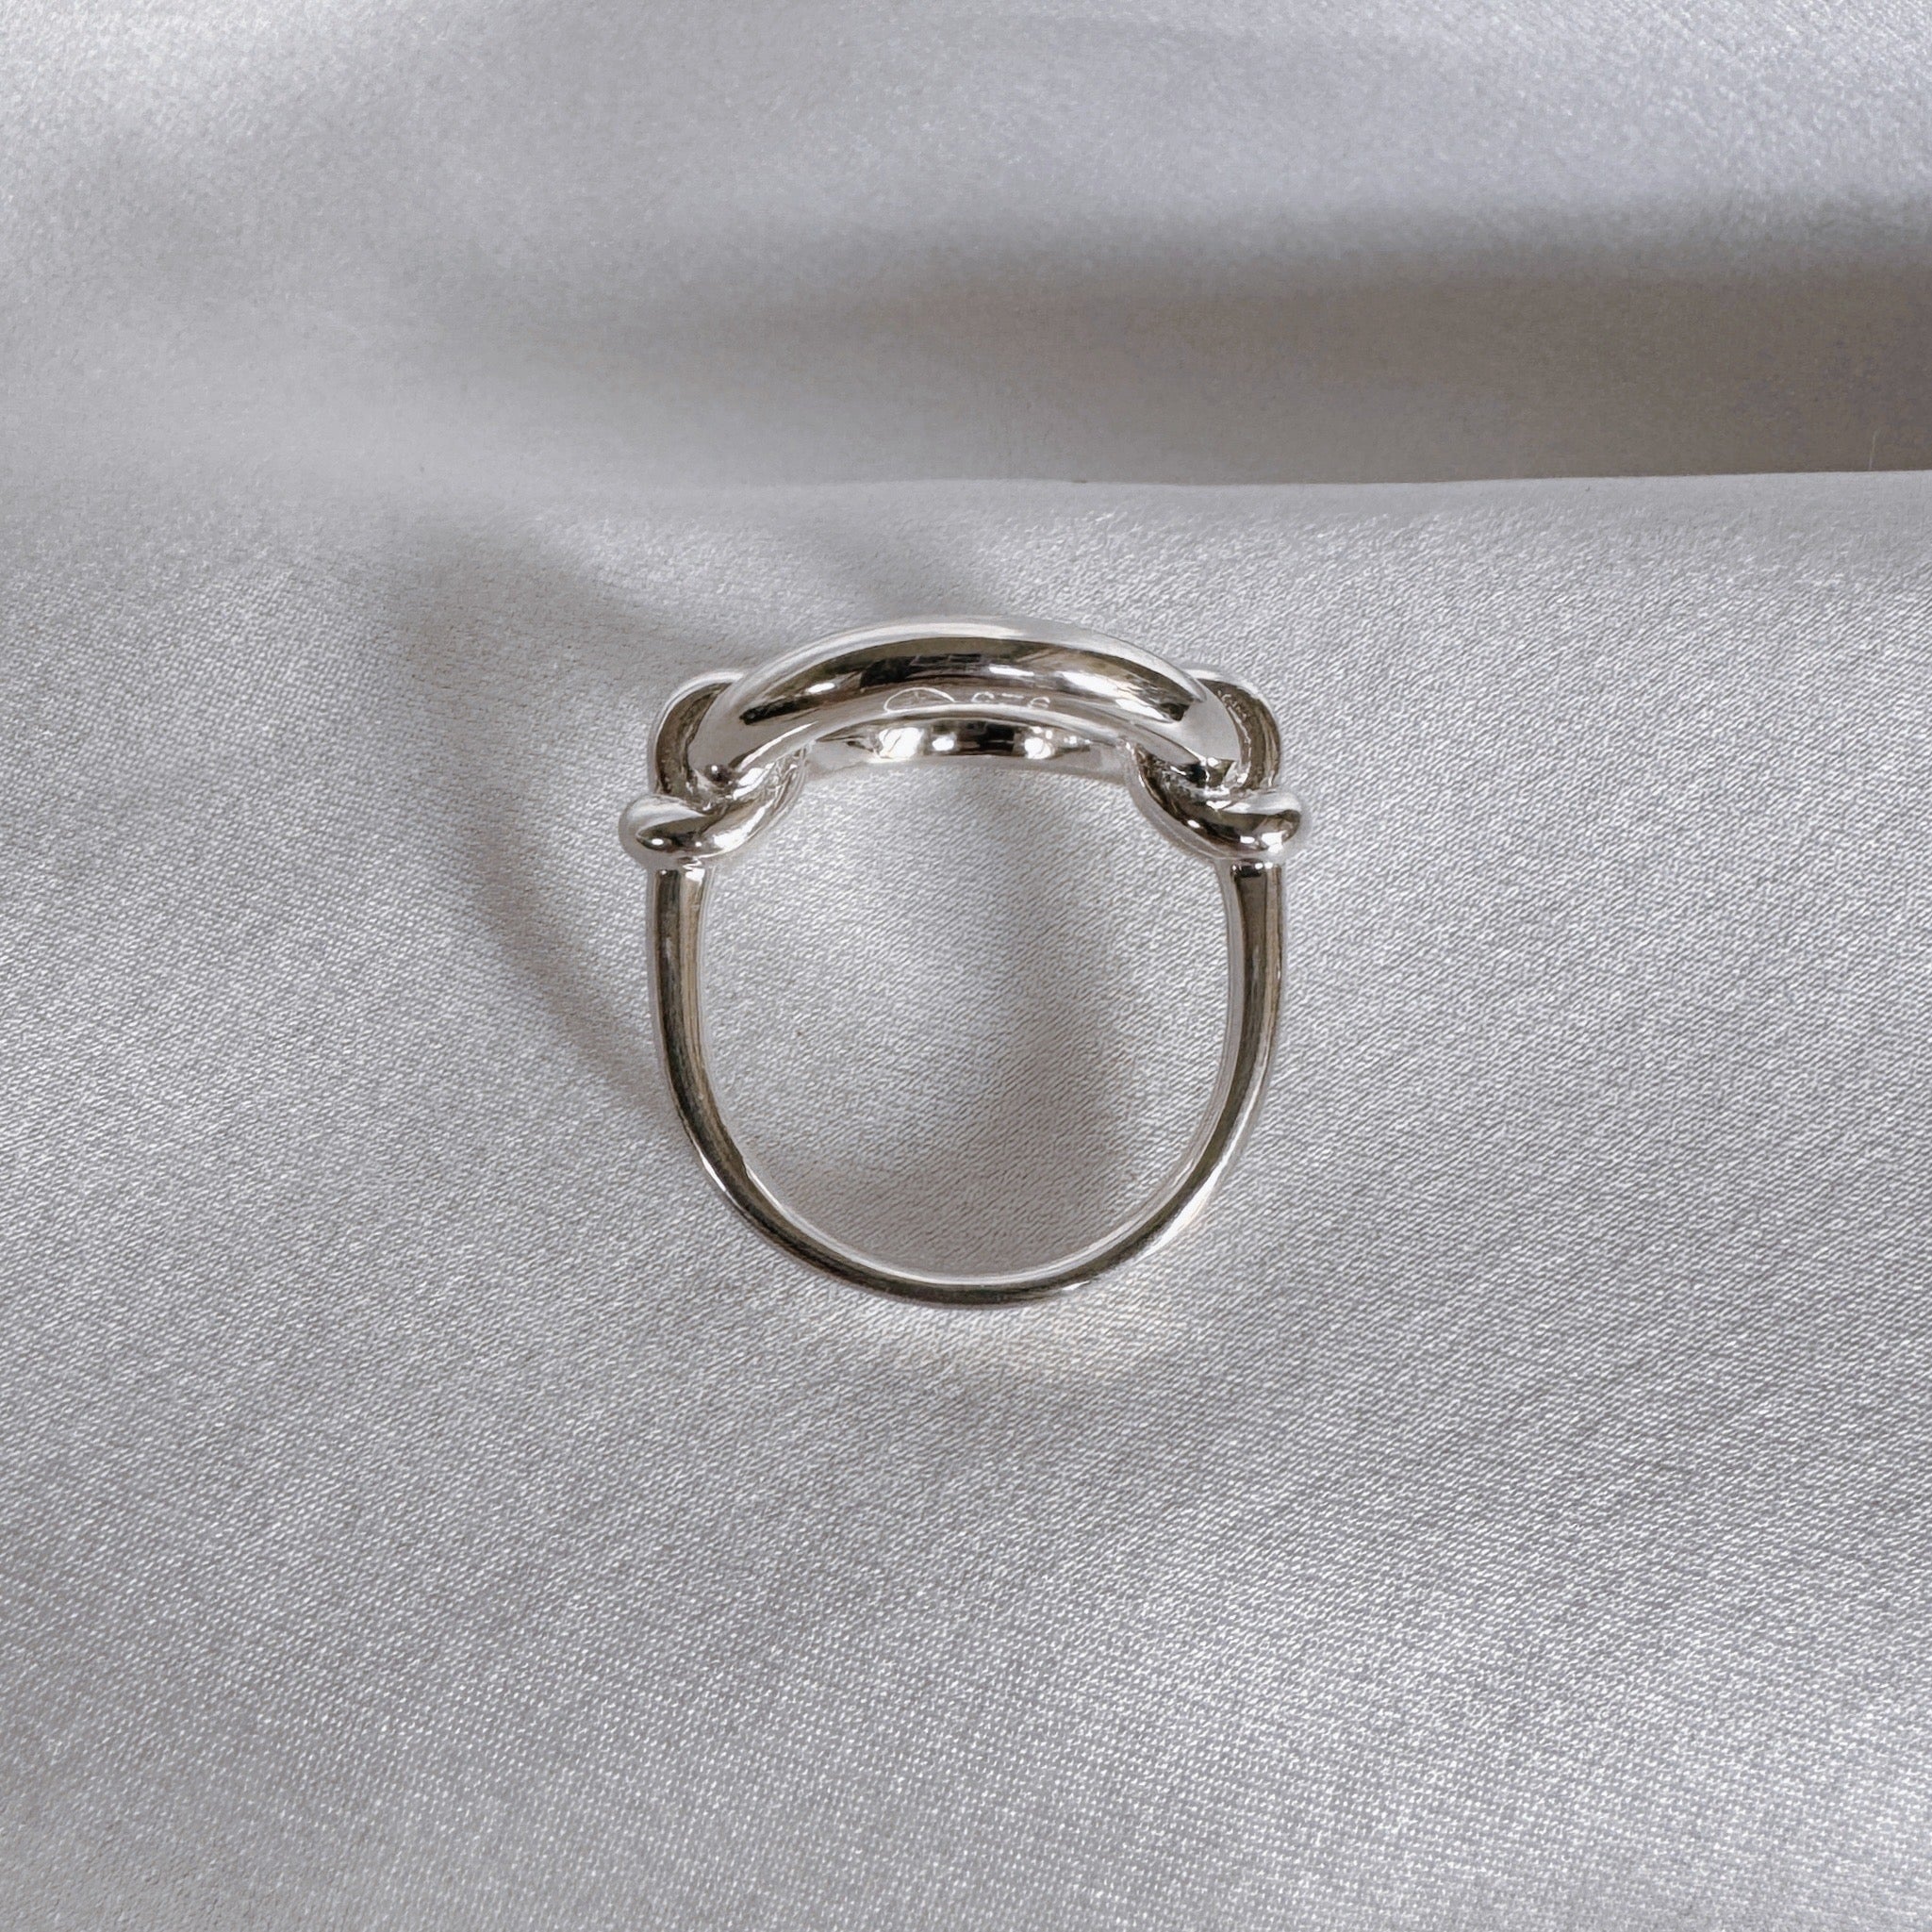 925 silver “Circle” ring